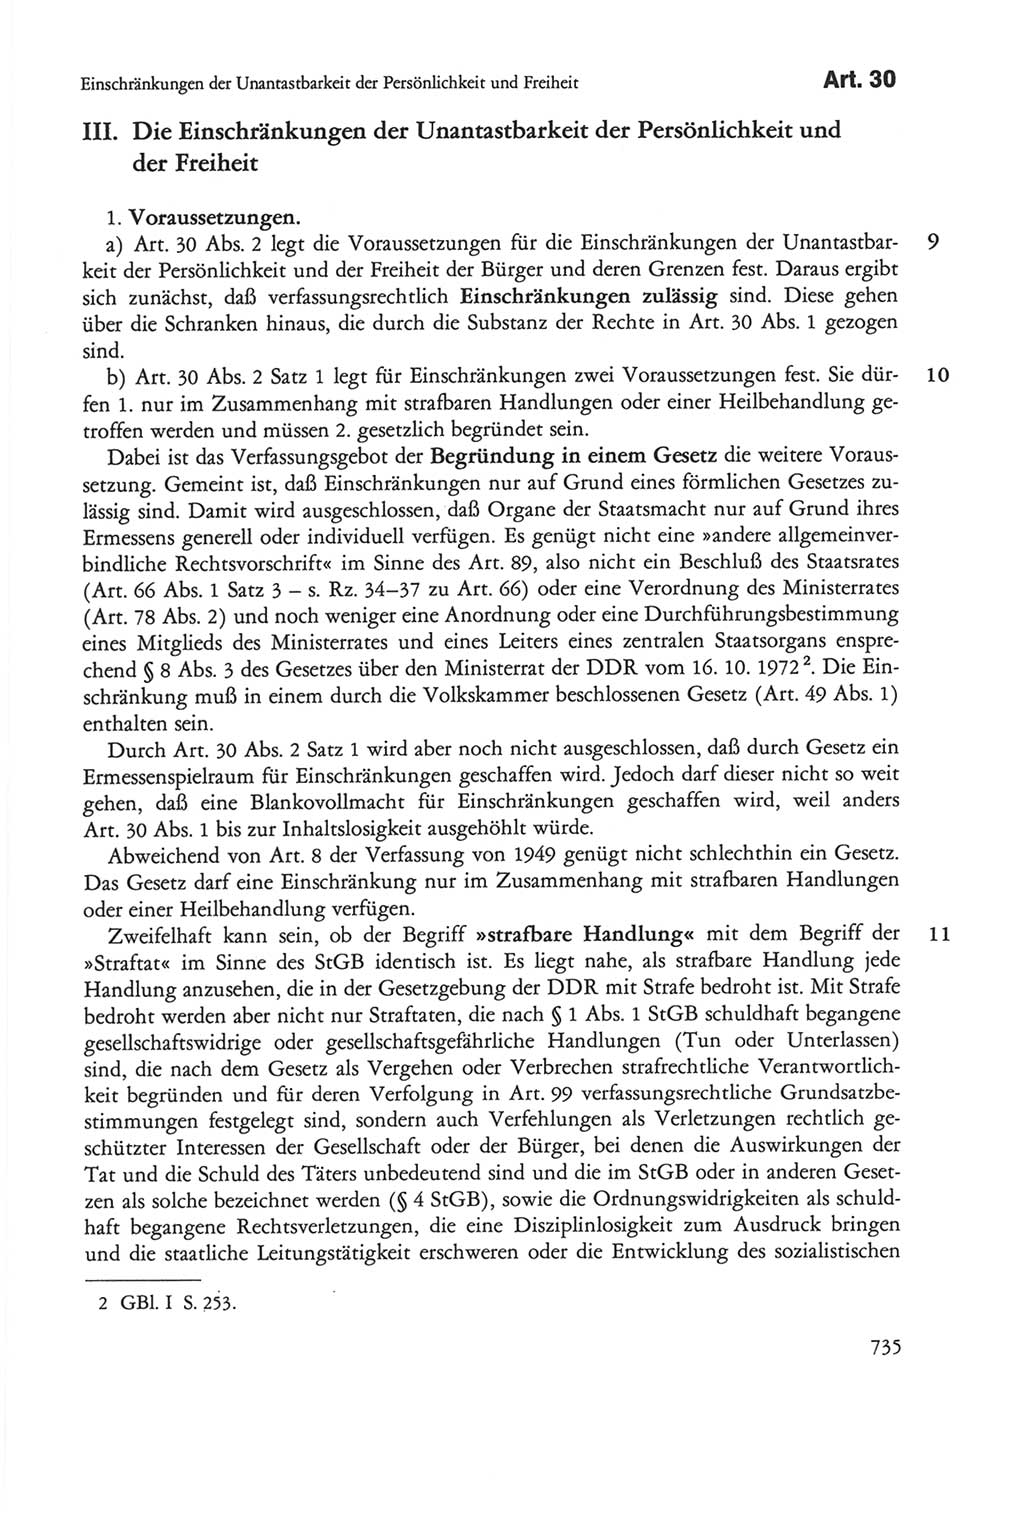 Die sozialistische Verfassung der Deutschen Demokratischen Republik (DDR), Kommentar mit einem Nachtrag 1997, Seite 735 (Soz. Verf. DDR Komm. Nachtr. 1997, S. 735)